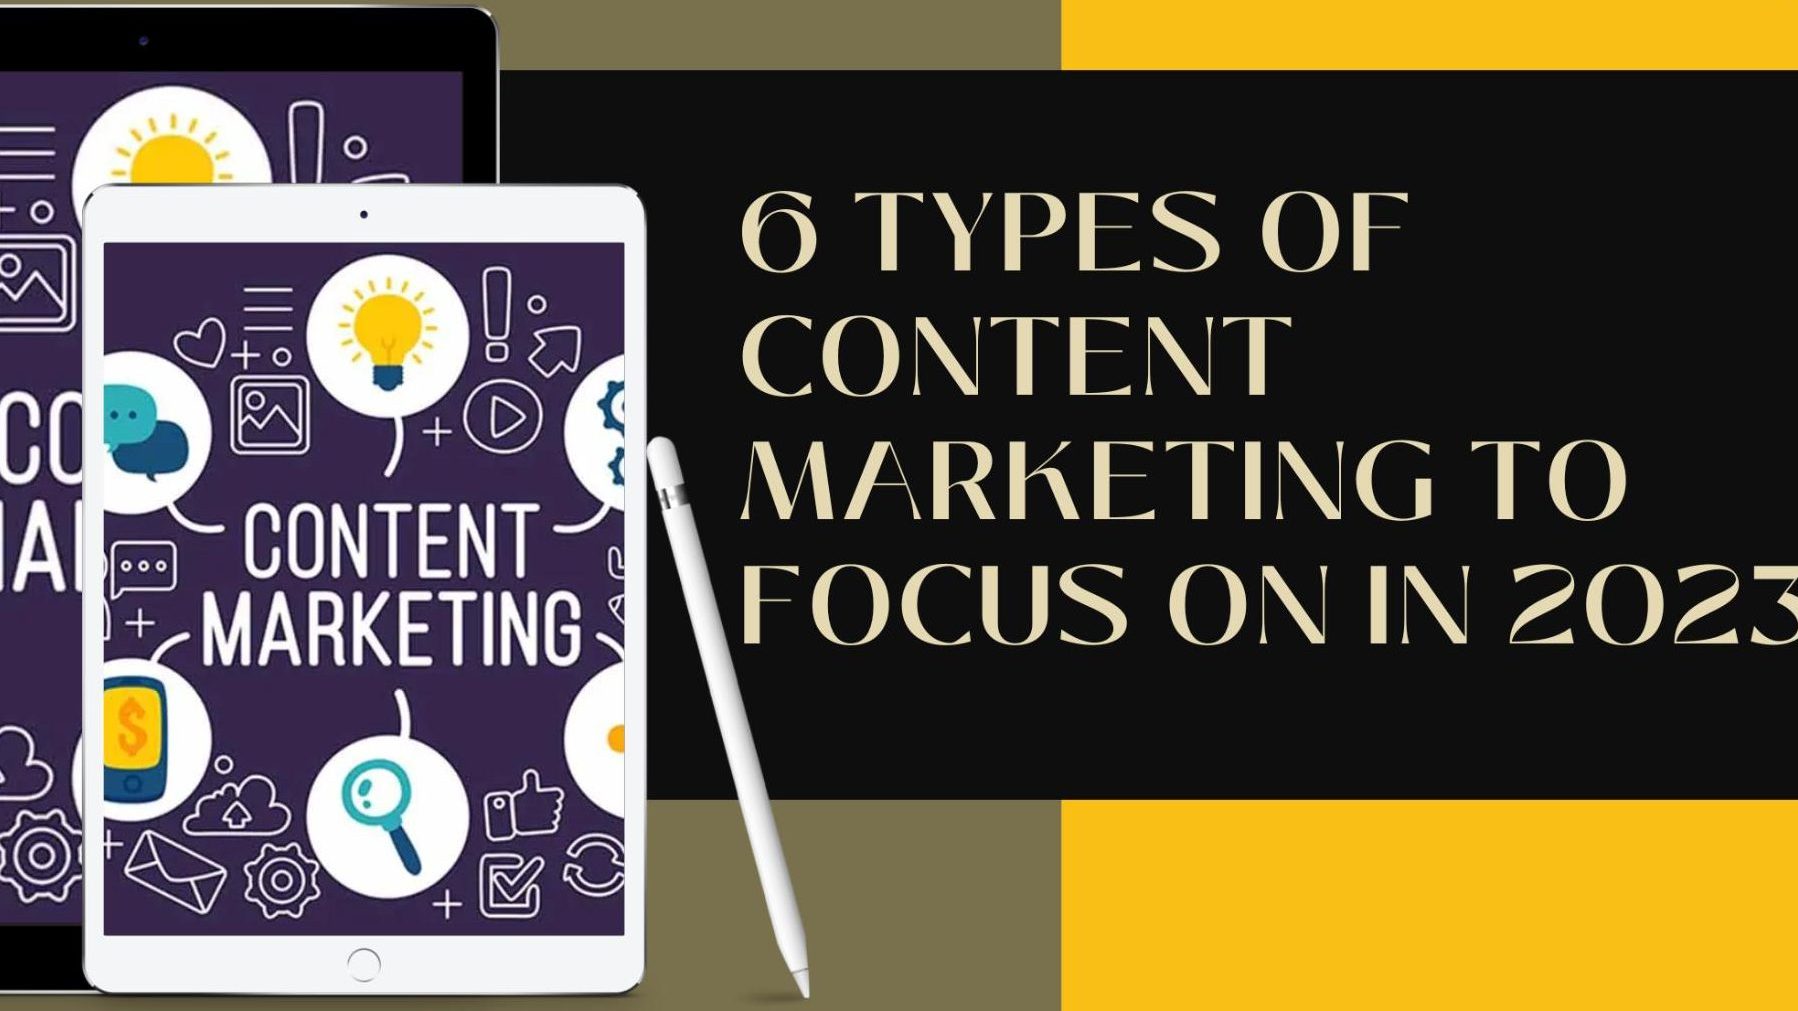 Các dạng Content Marketing mà bạn thường gặp bao gồm: blog, video, social media, ebook, infographic, email